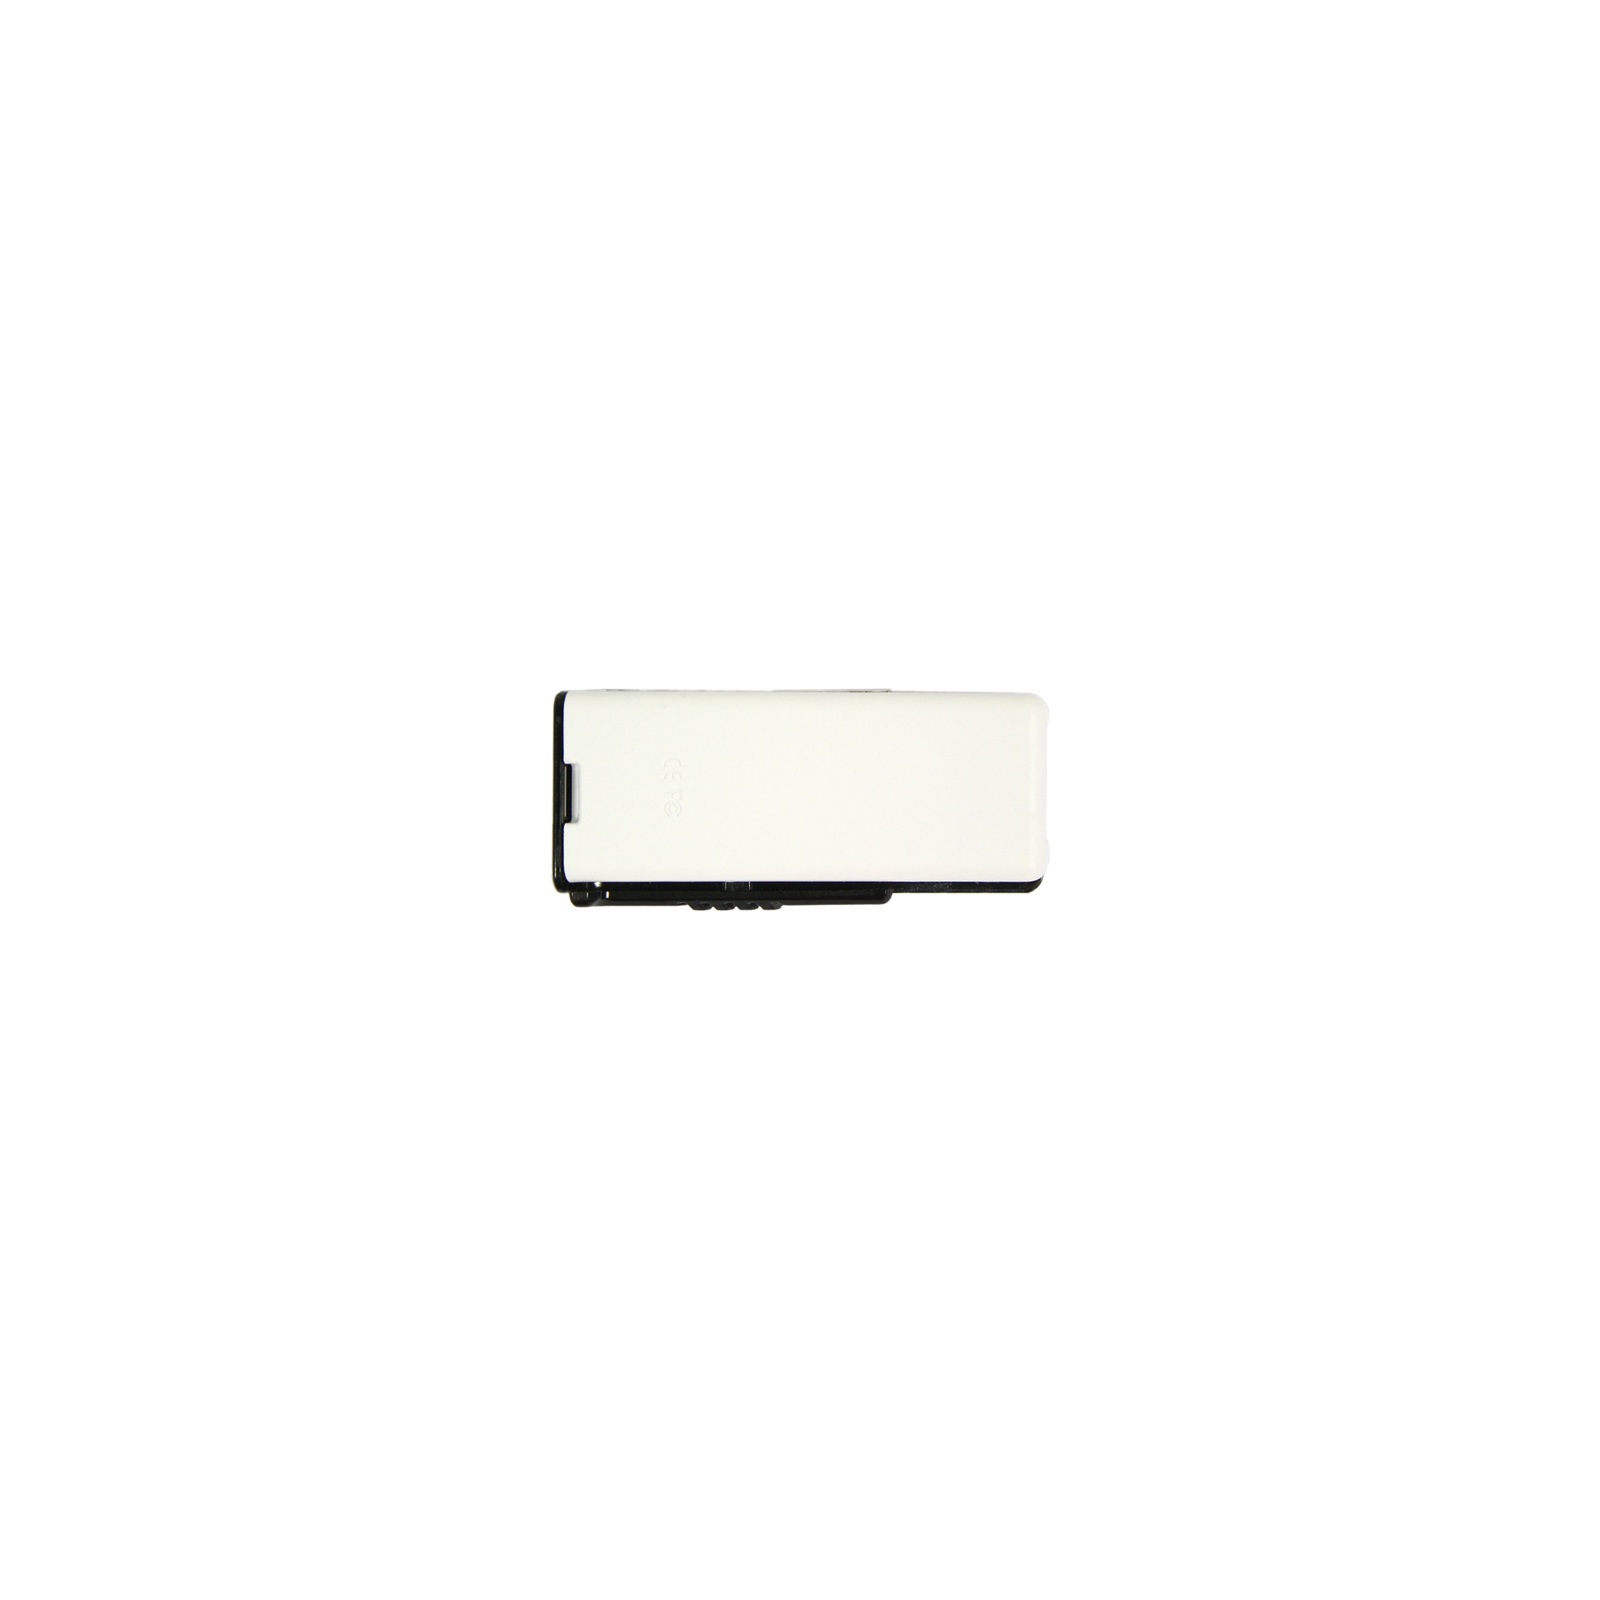 USB флеш накопичувач Apacer 64GB AH350 Black RP USB3.0 (AP64GAH350B-1) зображення 2